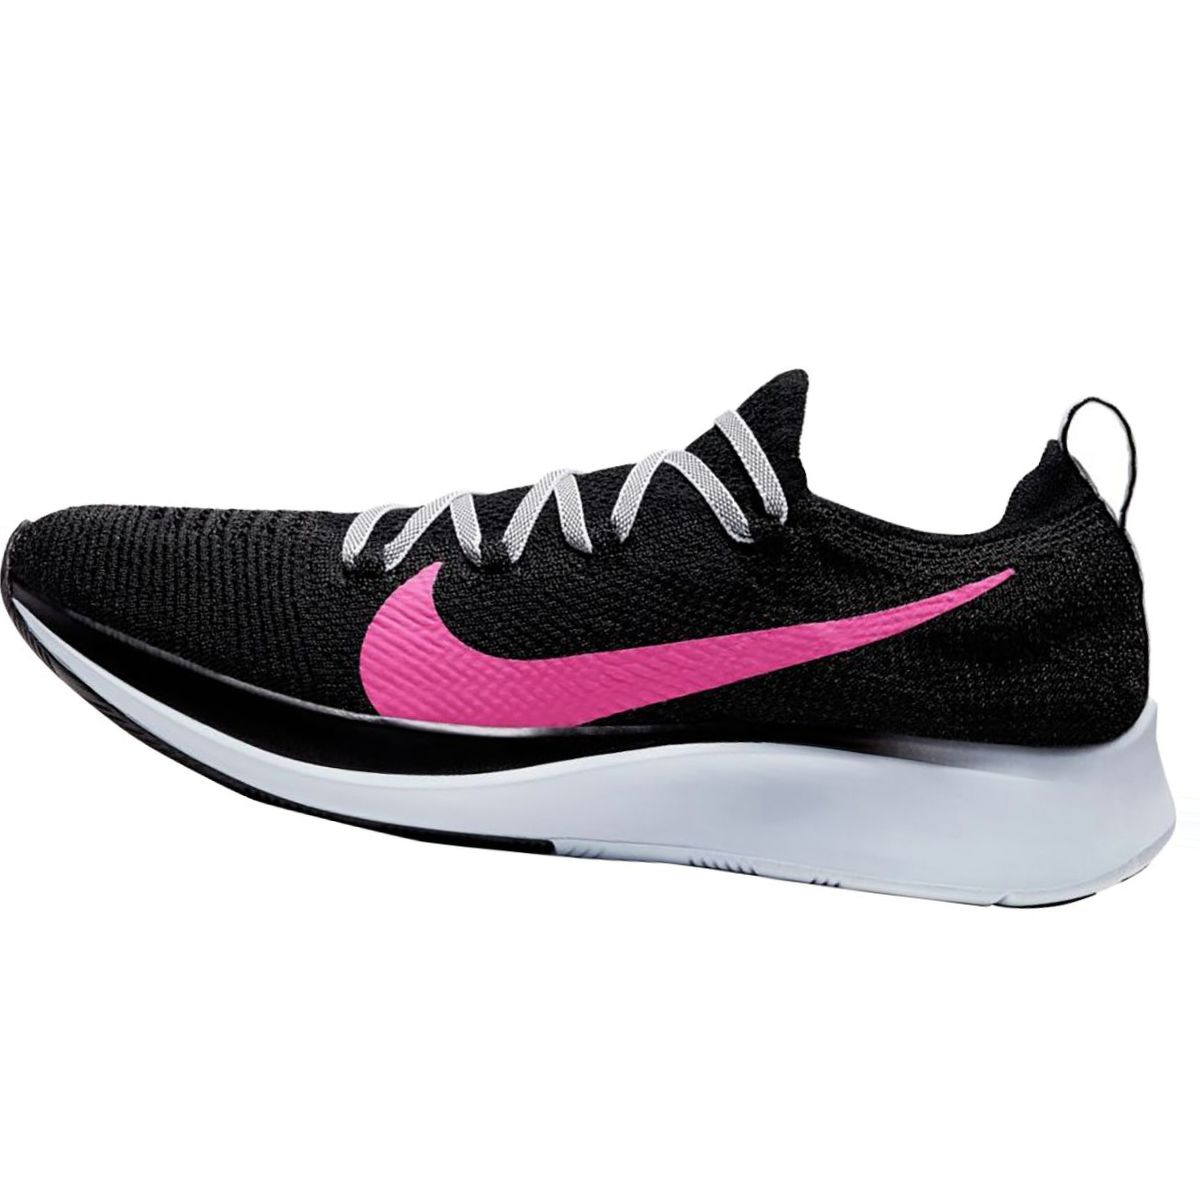 Nike Zoom Fly Flyknit Running Shoe - Women's